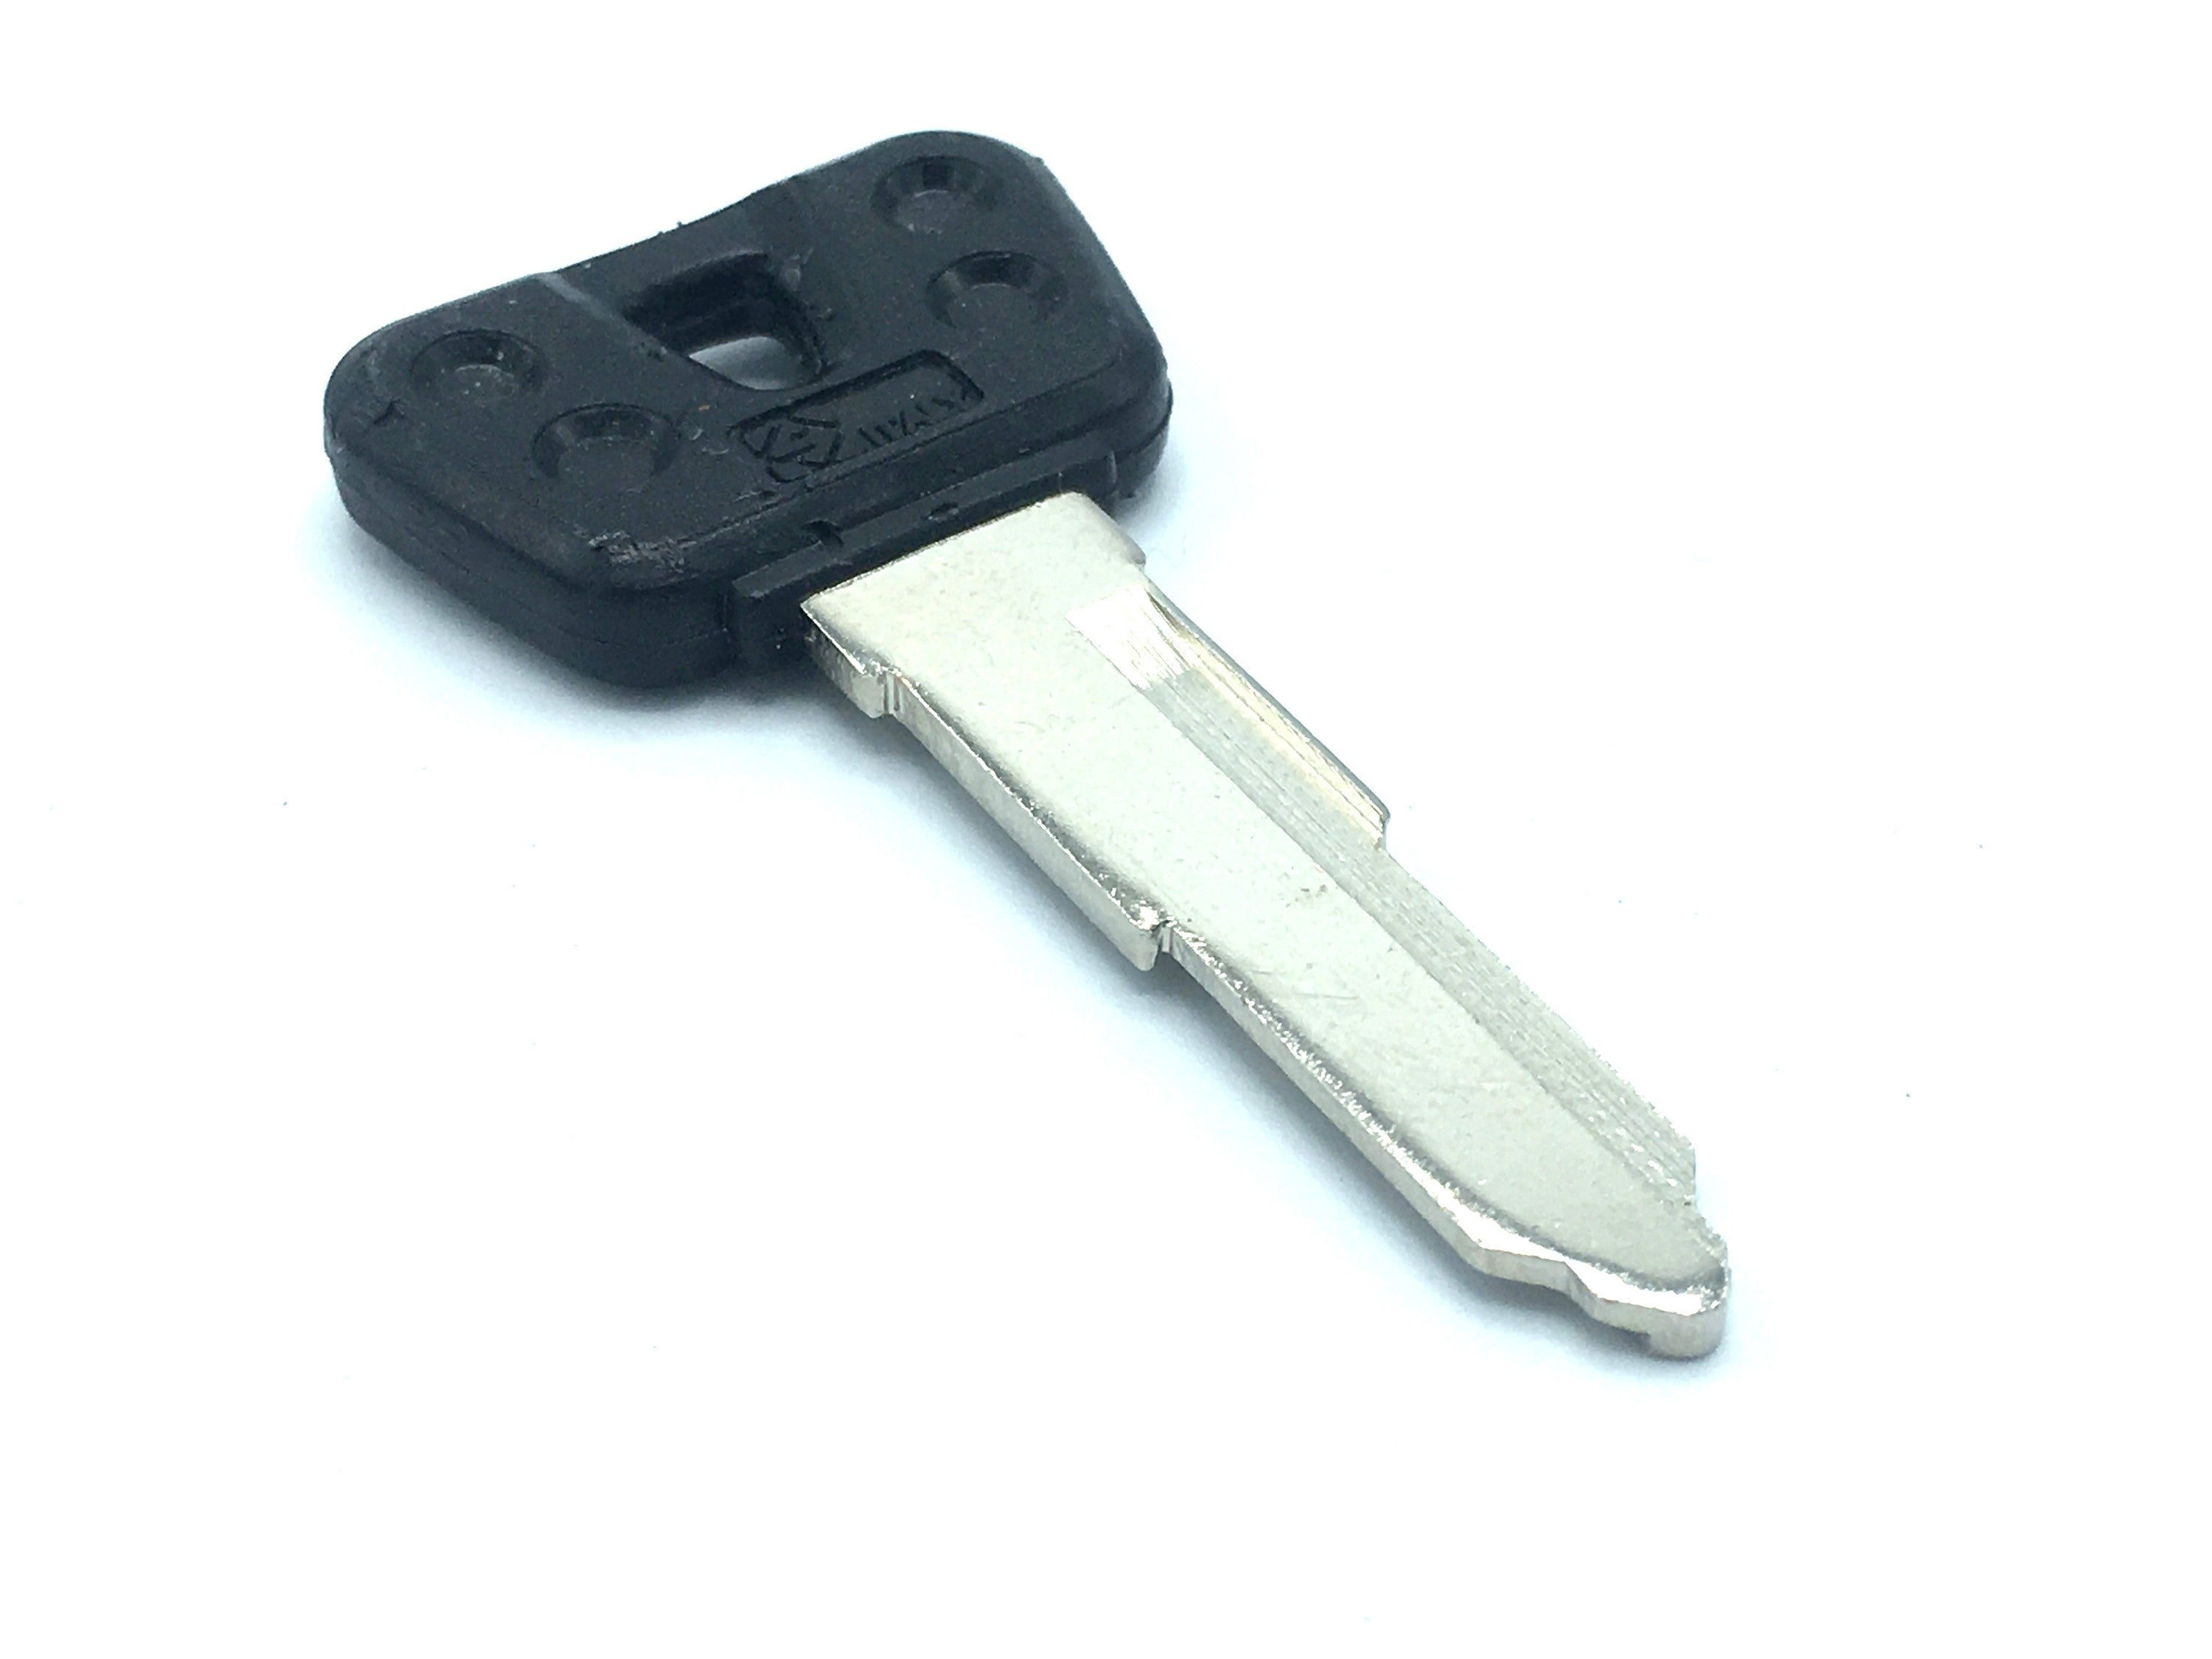 \Yamaha TW200 Ignition Key (oem style with plastic head) [1 SLIT, RIGHTSIDE]